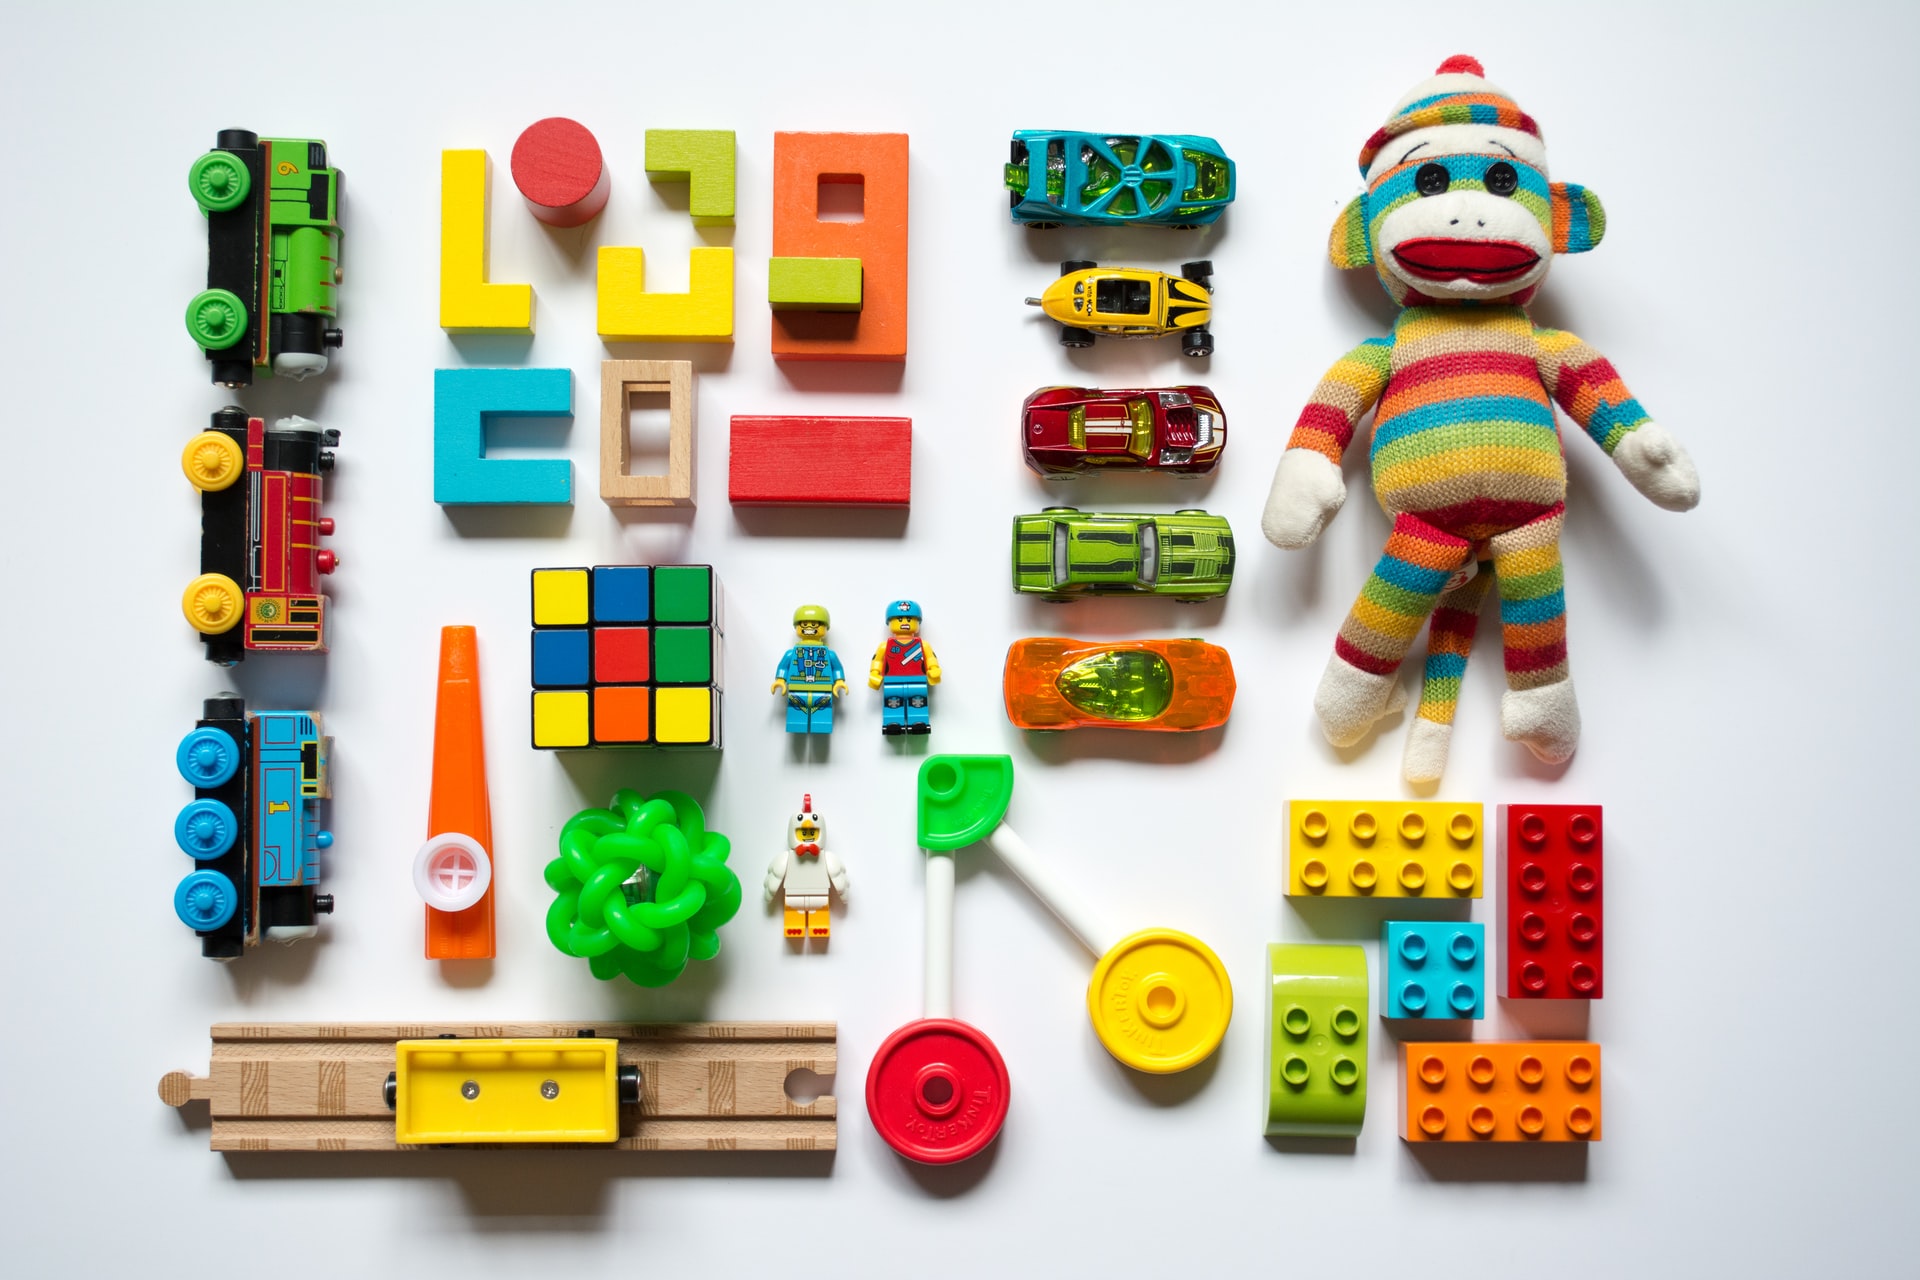 Find det perfekte legetøjsopbevaring hos Little Happy